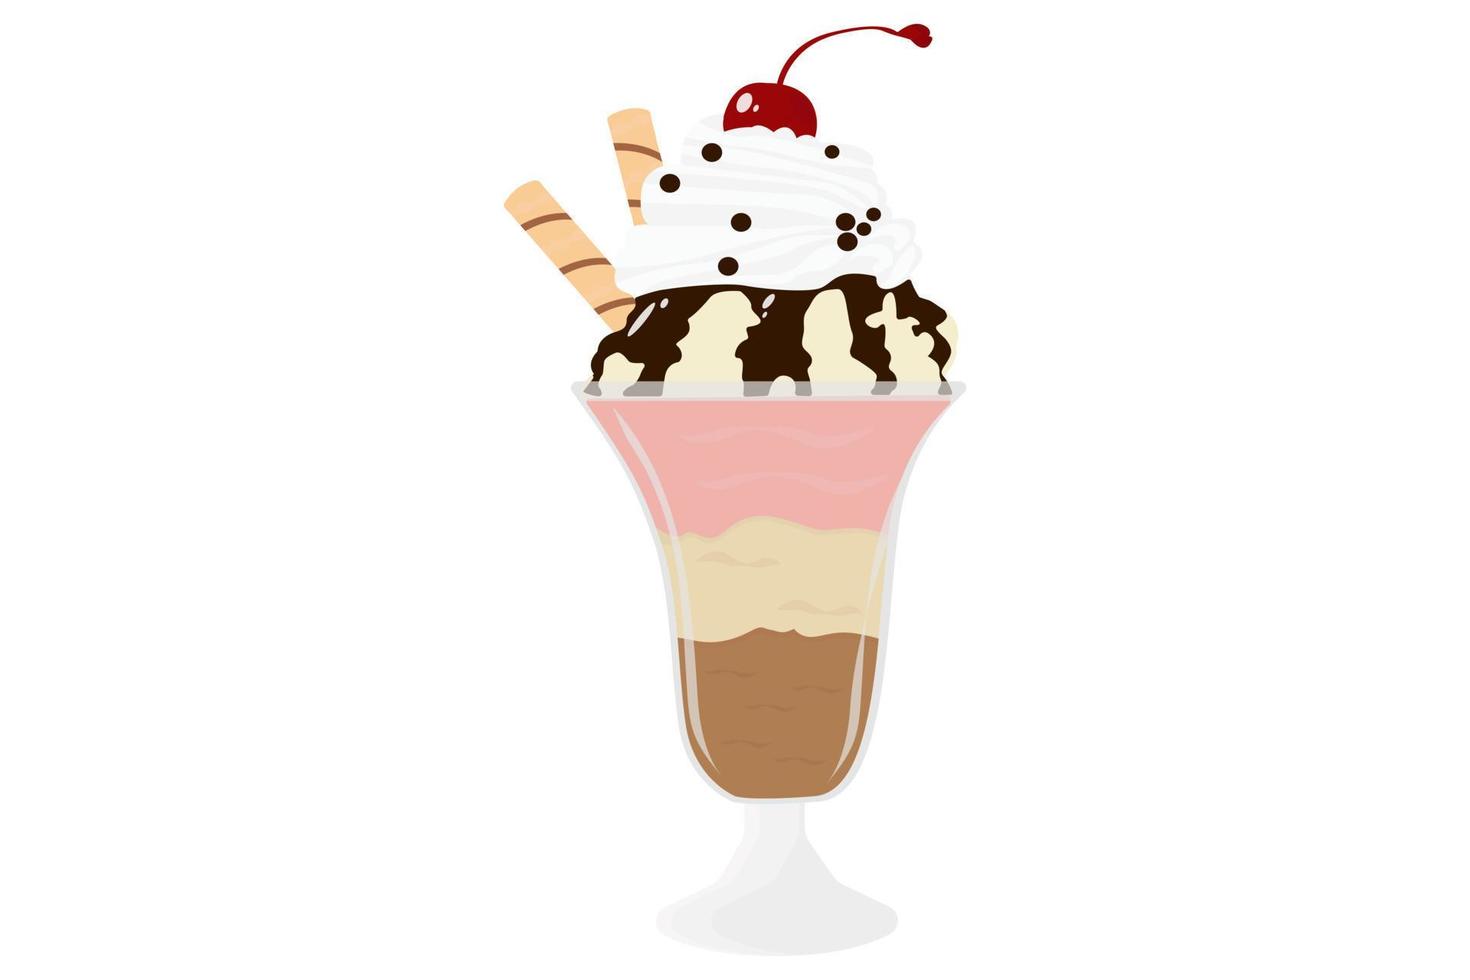 conos de helado de cereza. helado en un recipiente de vidrio. helado de chocolate con cereza. vector